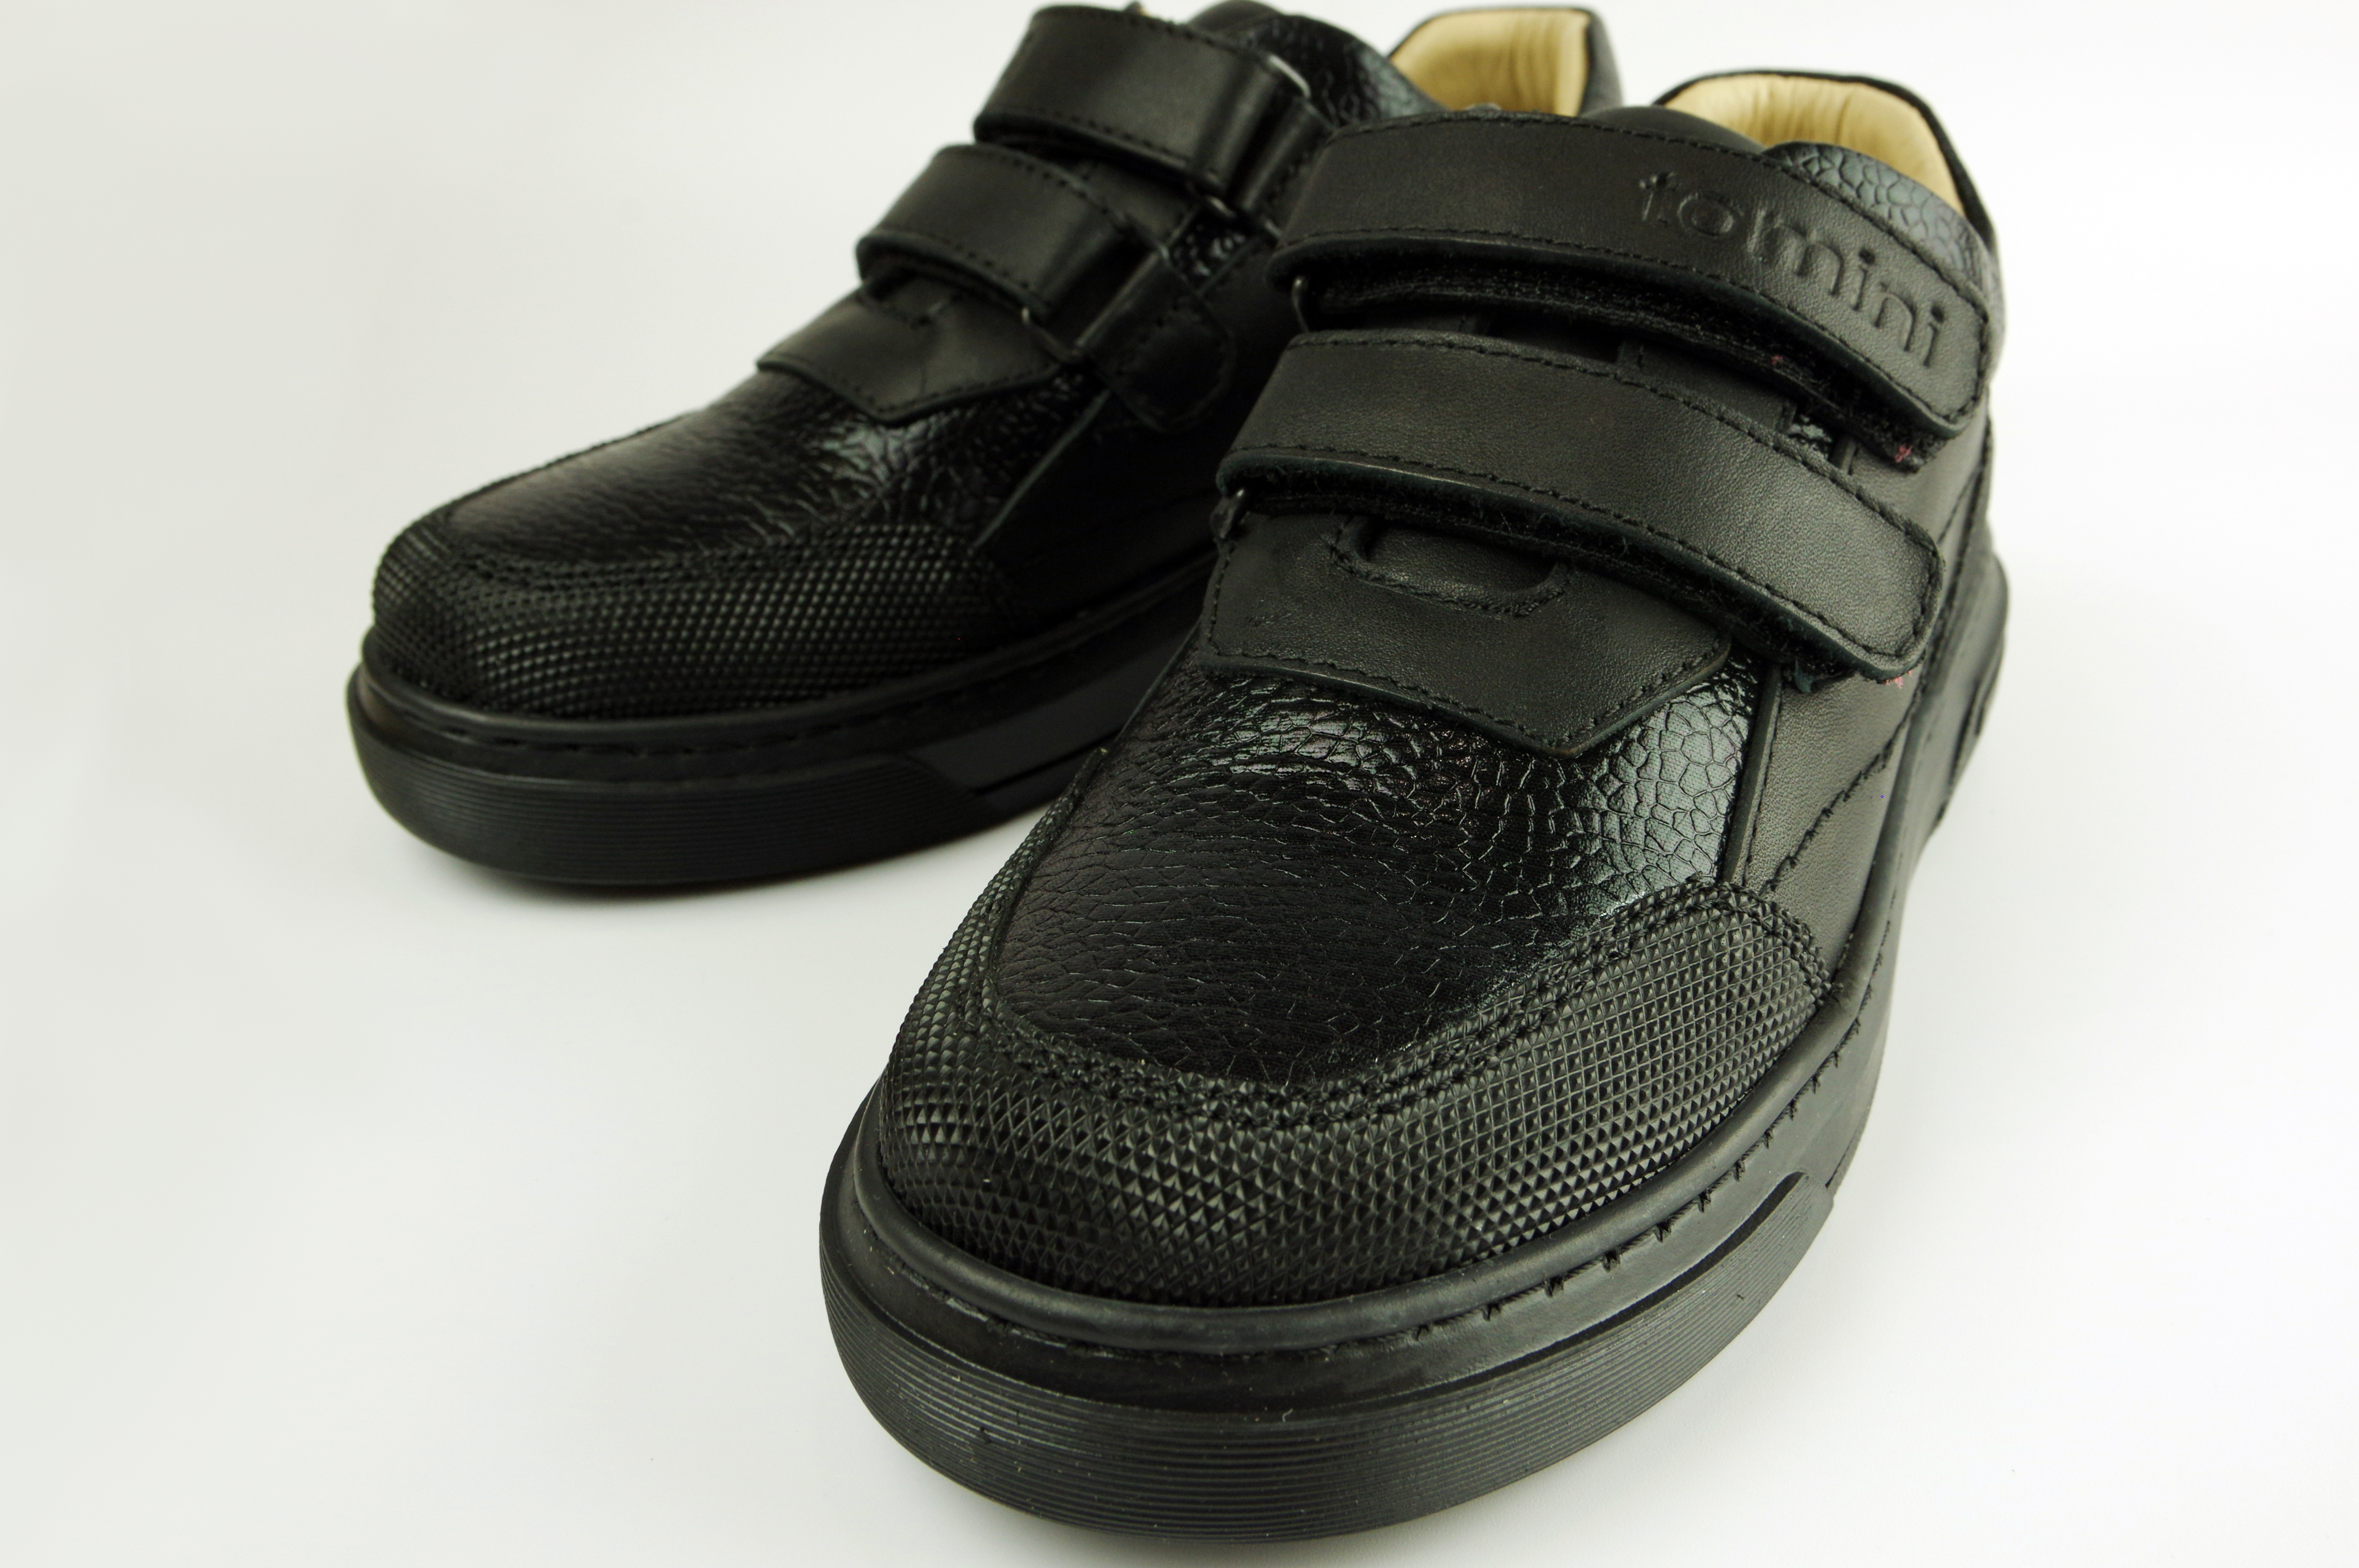 Туфлі дитячі (2113) для хлопчика, матеріал Натуральна шкіра, Чорний колір, 31-36 розміри – Sole Kids. Фото 3